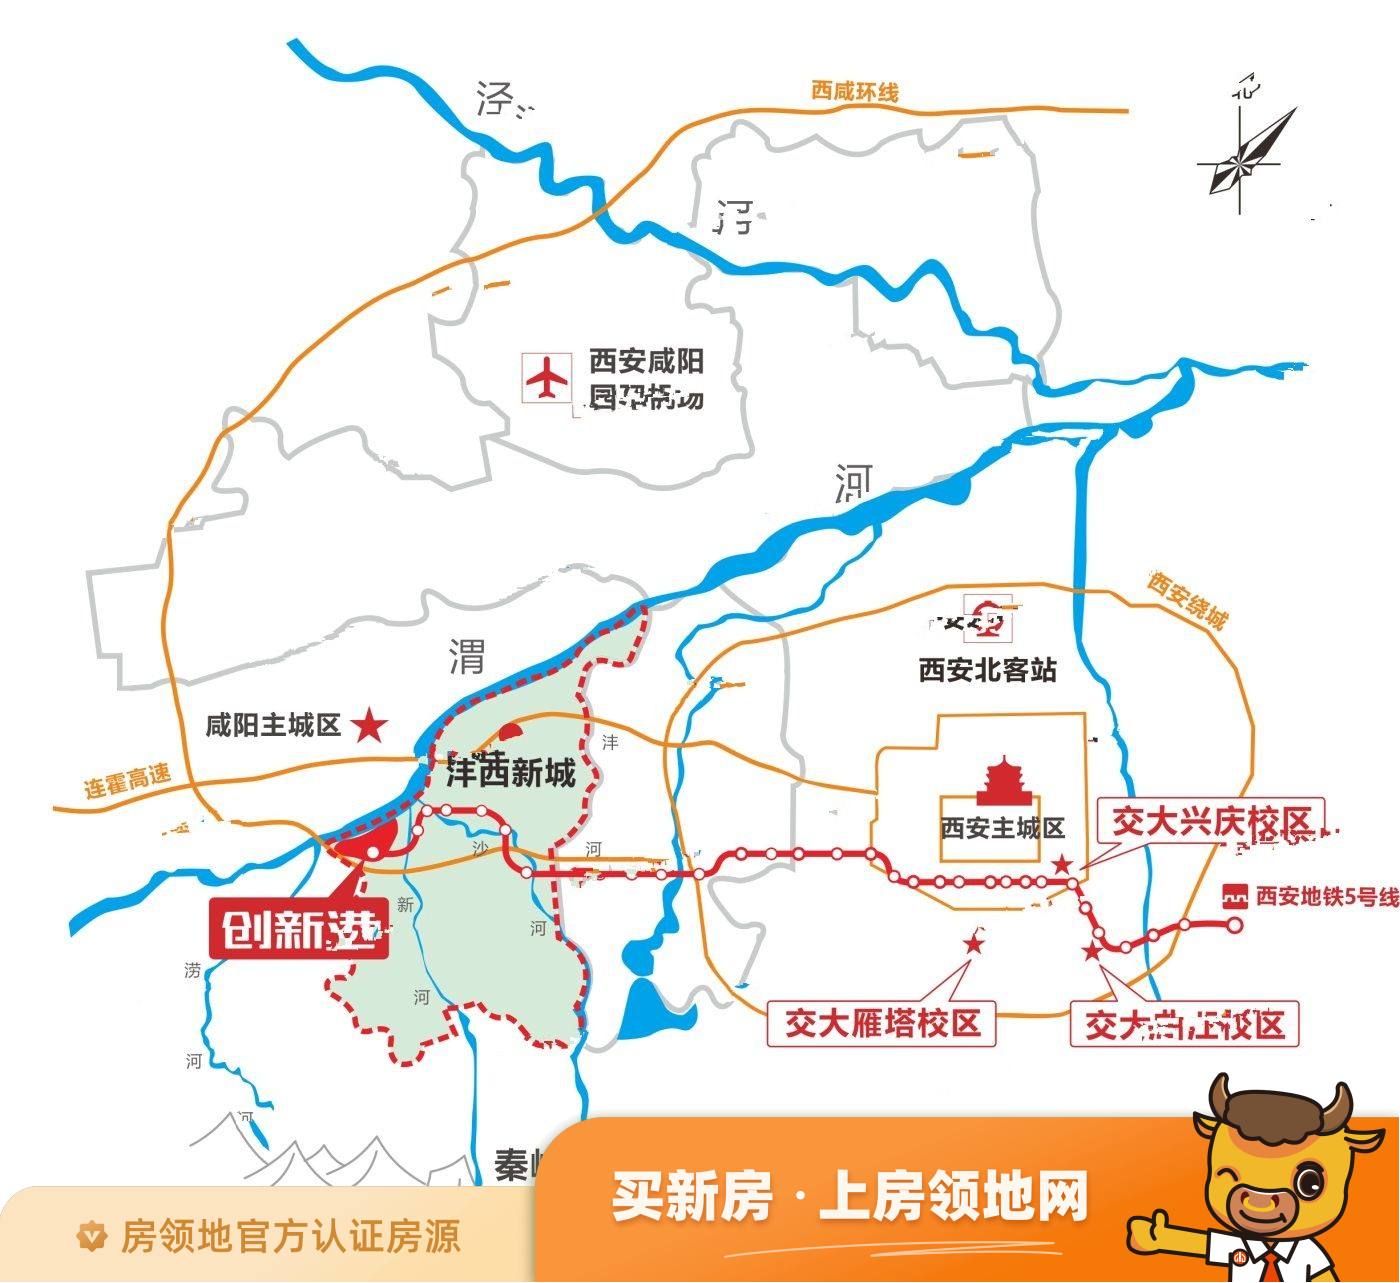 中国西部科技创新港学镇中心Ⅱ期位置交通图2